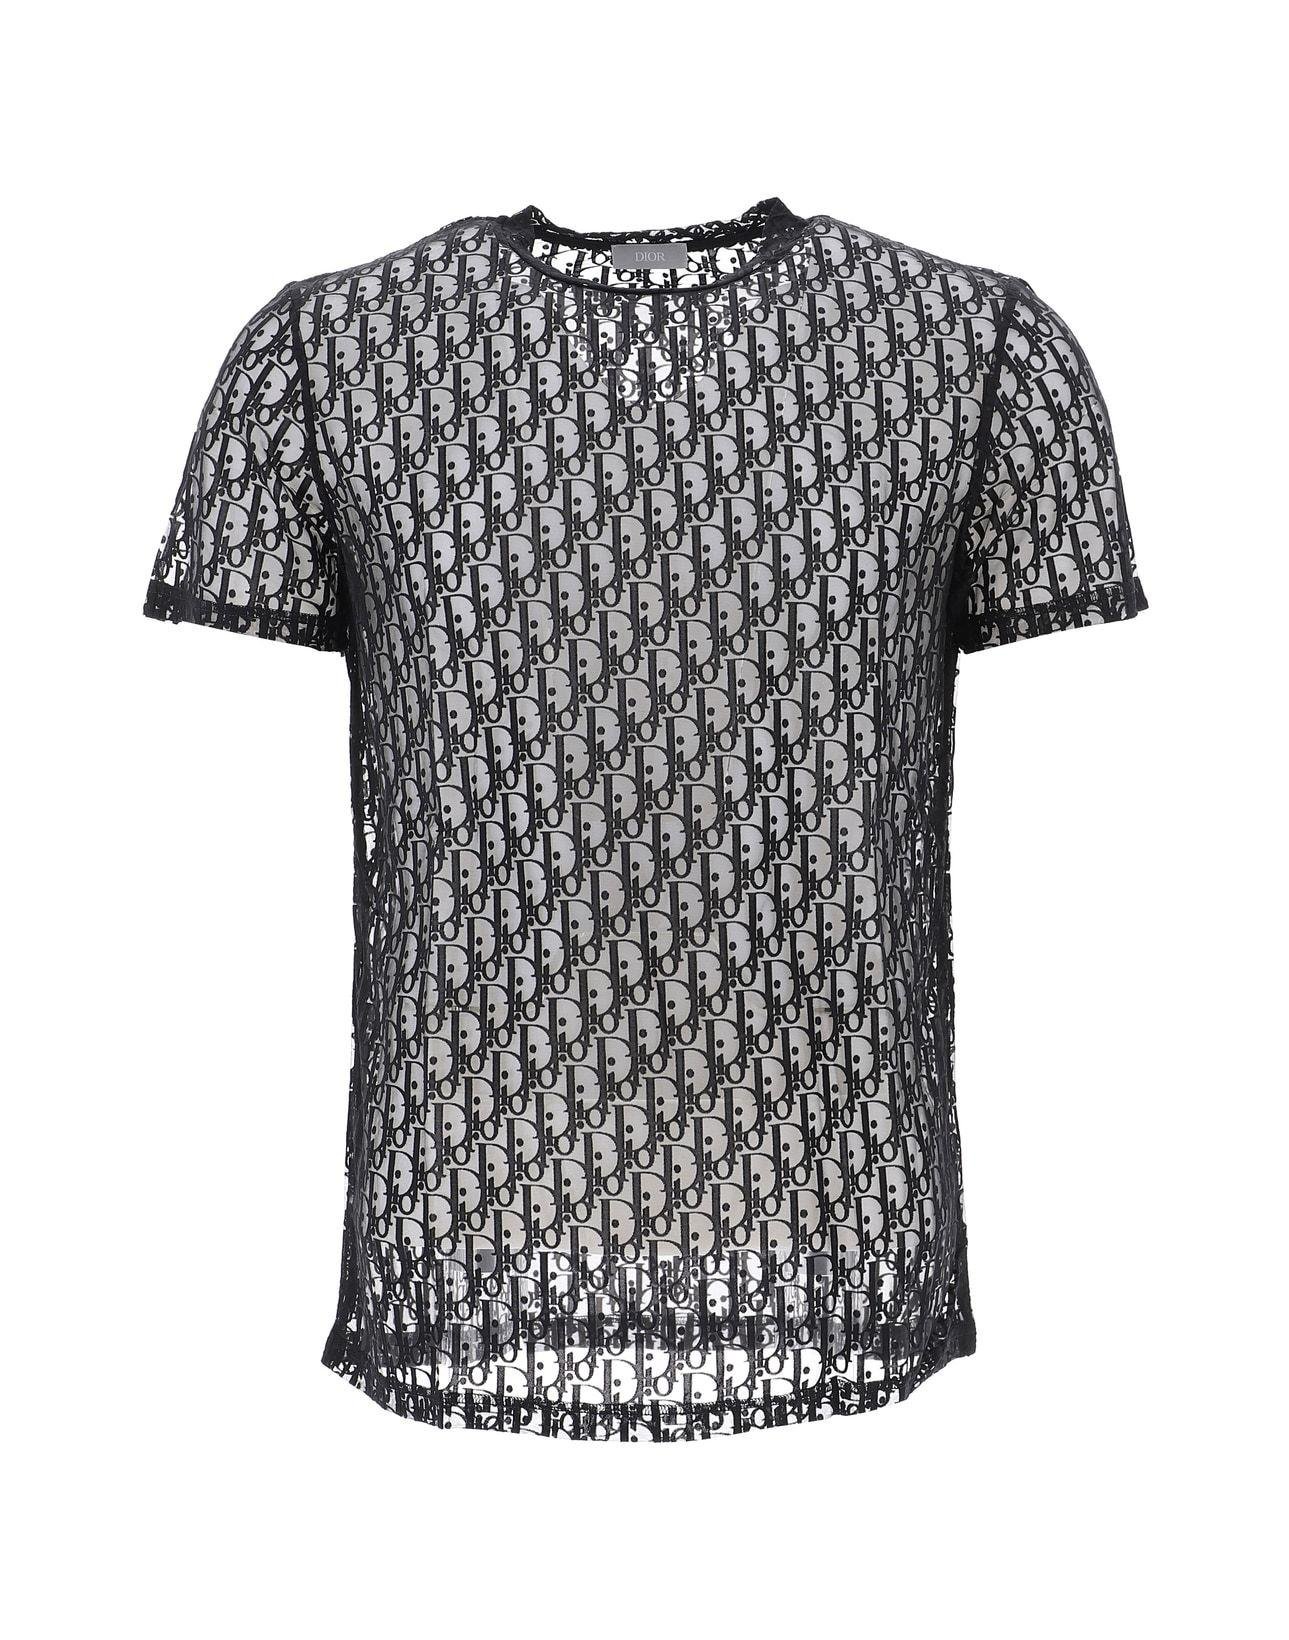 Dior TShirts aus Baumwolle  Schwarz  Größe 0  31417431